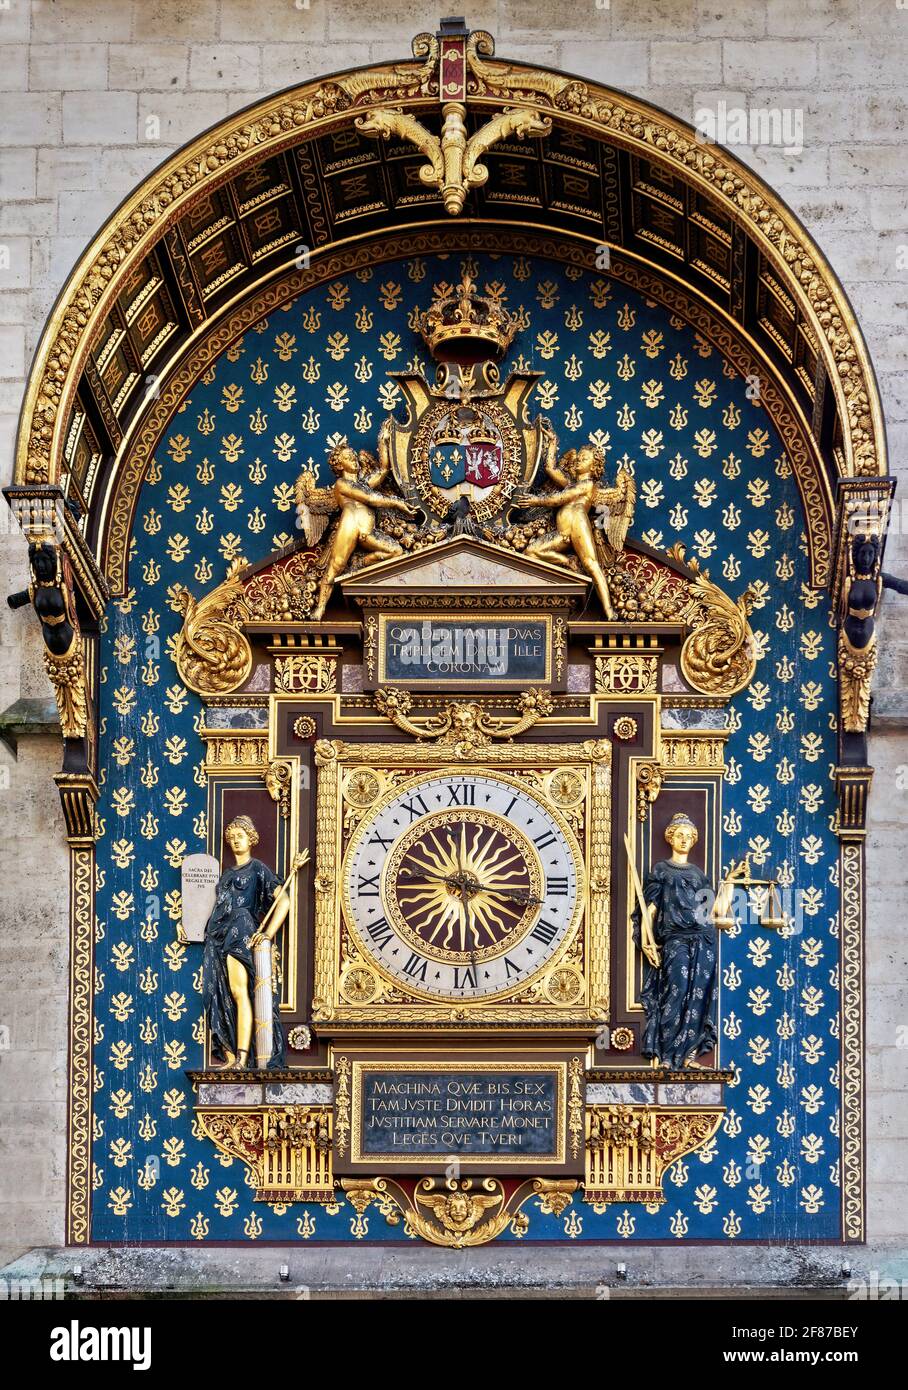 Die Conciergerie-Uhr, die älteste öffentliche Uhr in Paris, Frankreich  Stockfotografie - Alamy